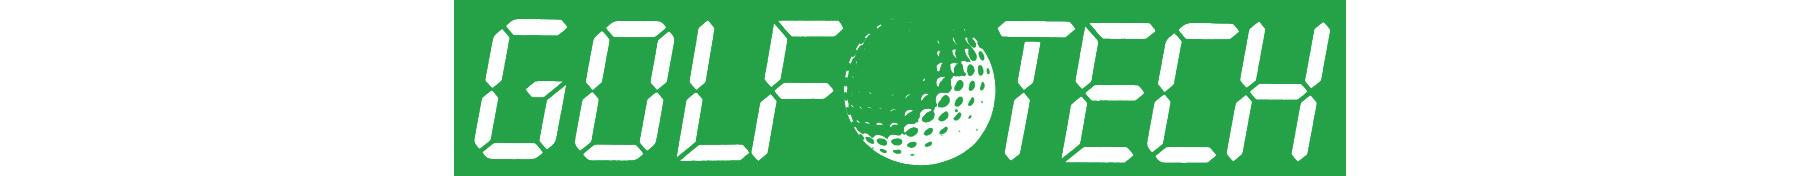 GolfTech logo_cropGolfartikel_Neu